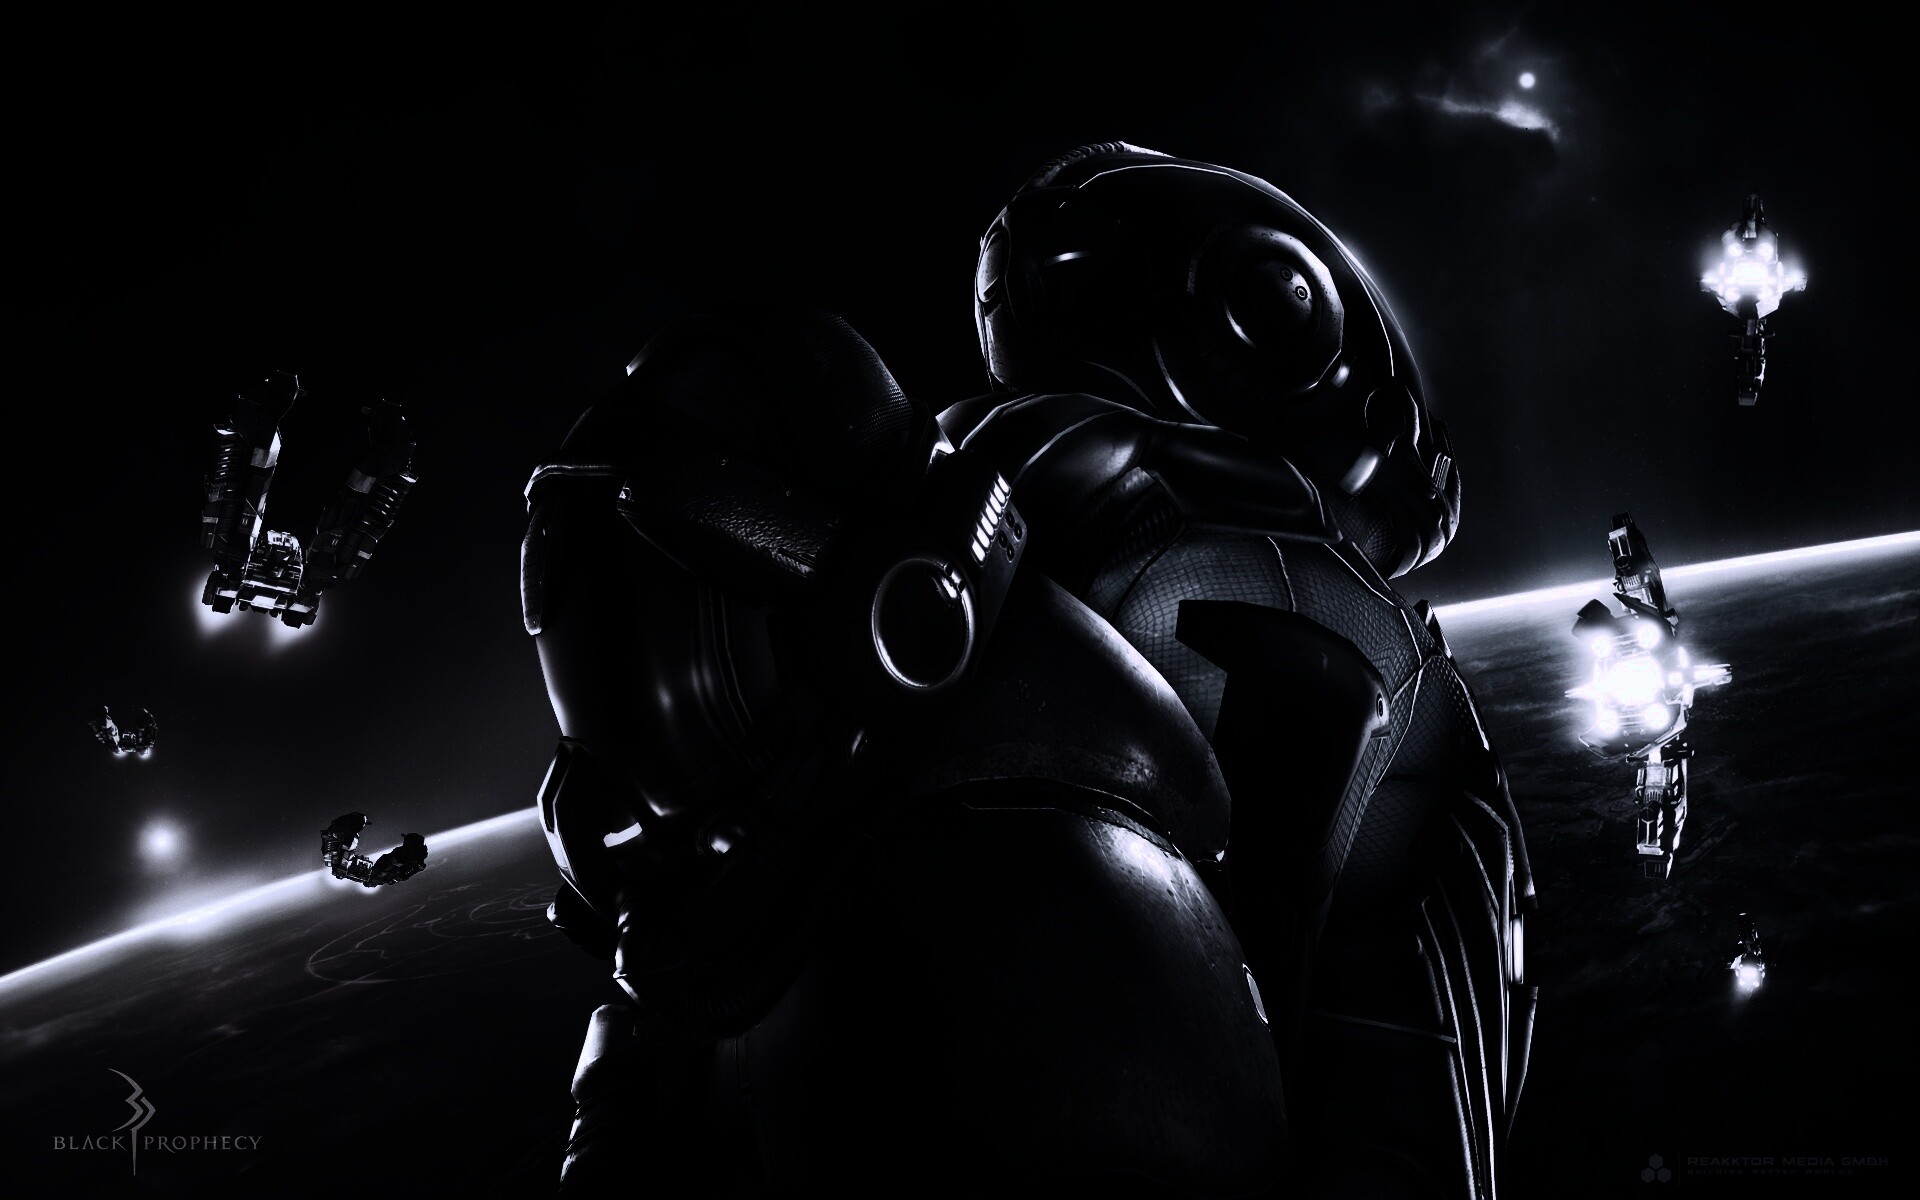 Black prophecy. Крутые картинки на обои черные космонкфт. Обои черный Титан 15 Pro.